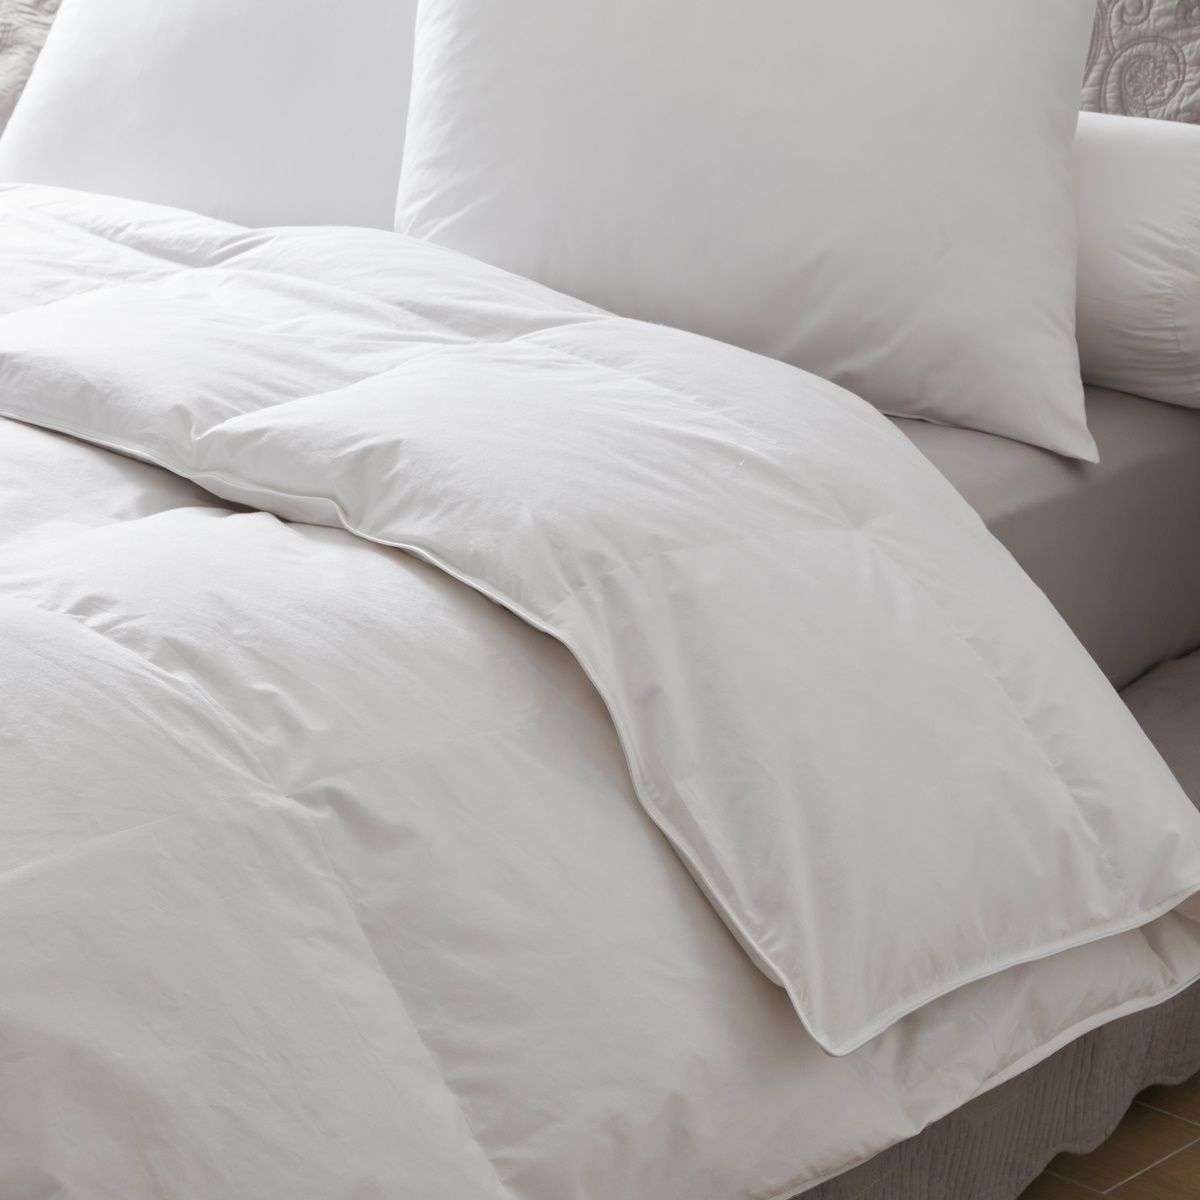 Duvet 90% goose down 300g / m² | Bed linen | Tradition des Vosges